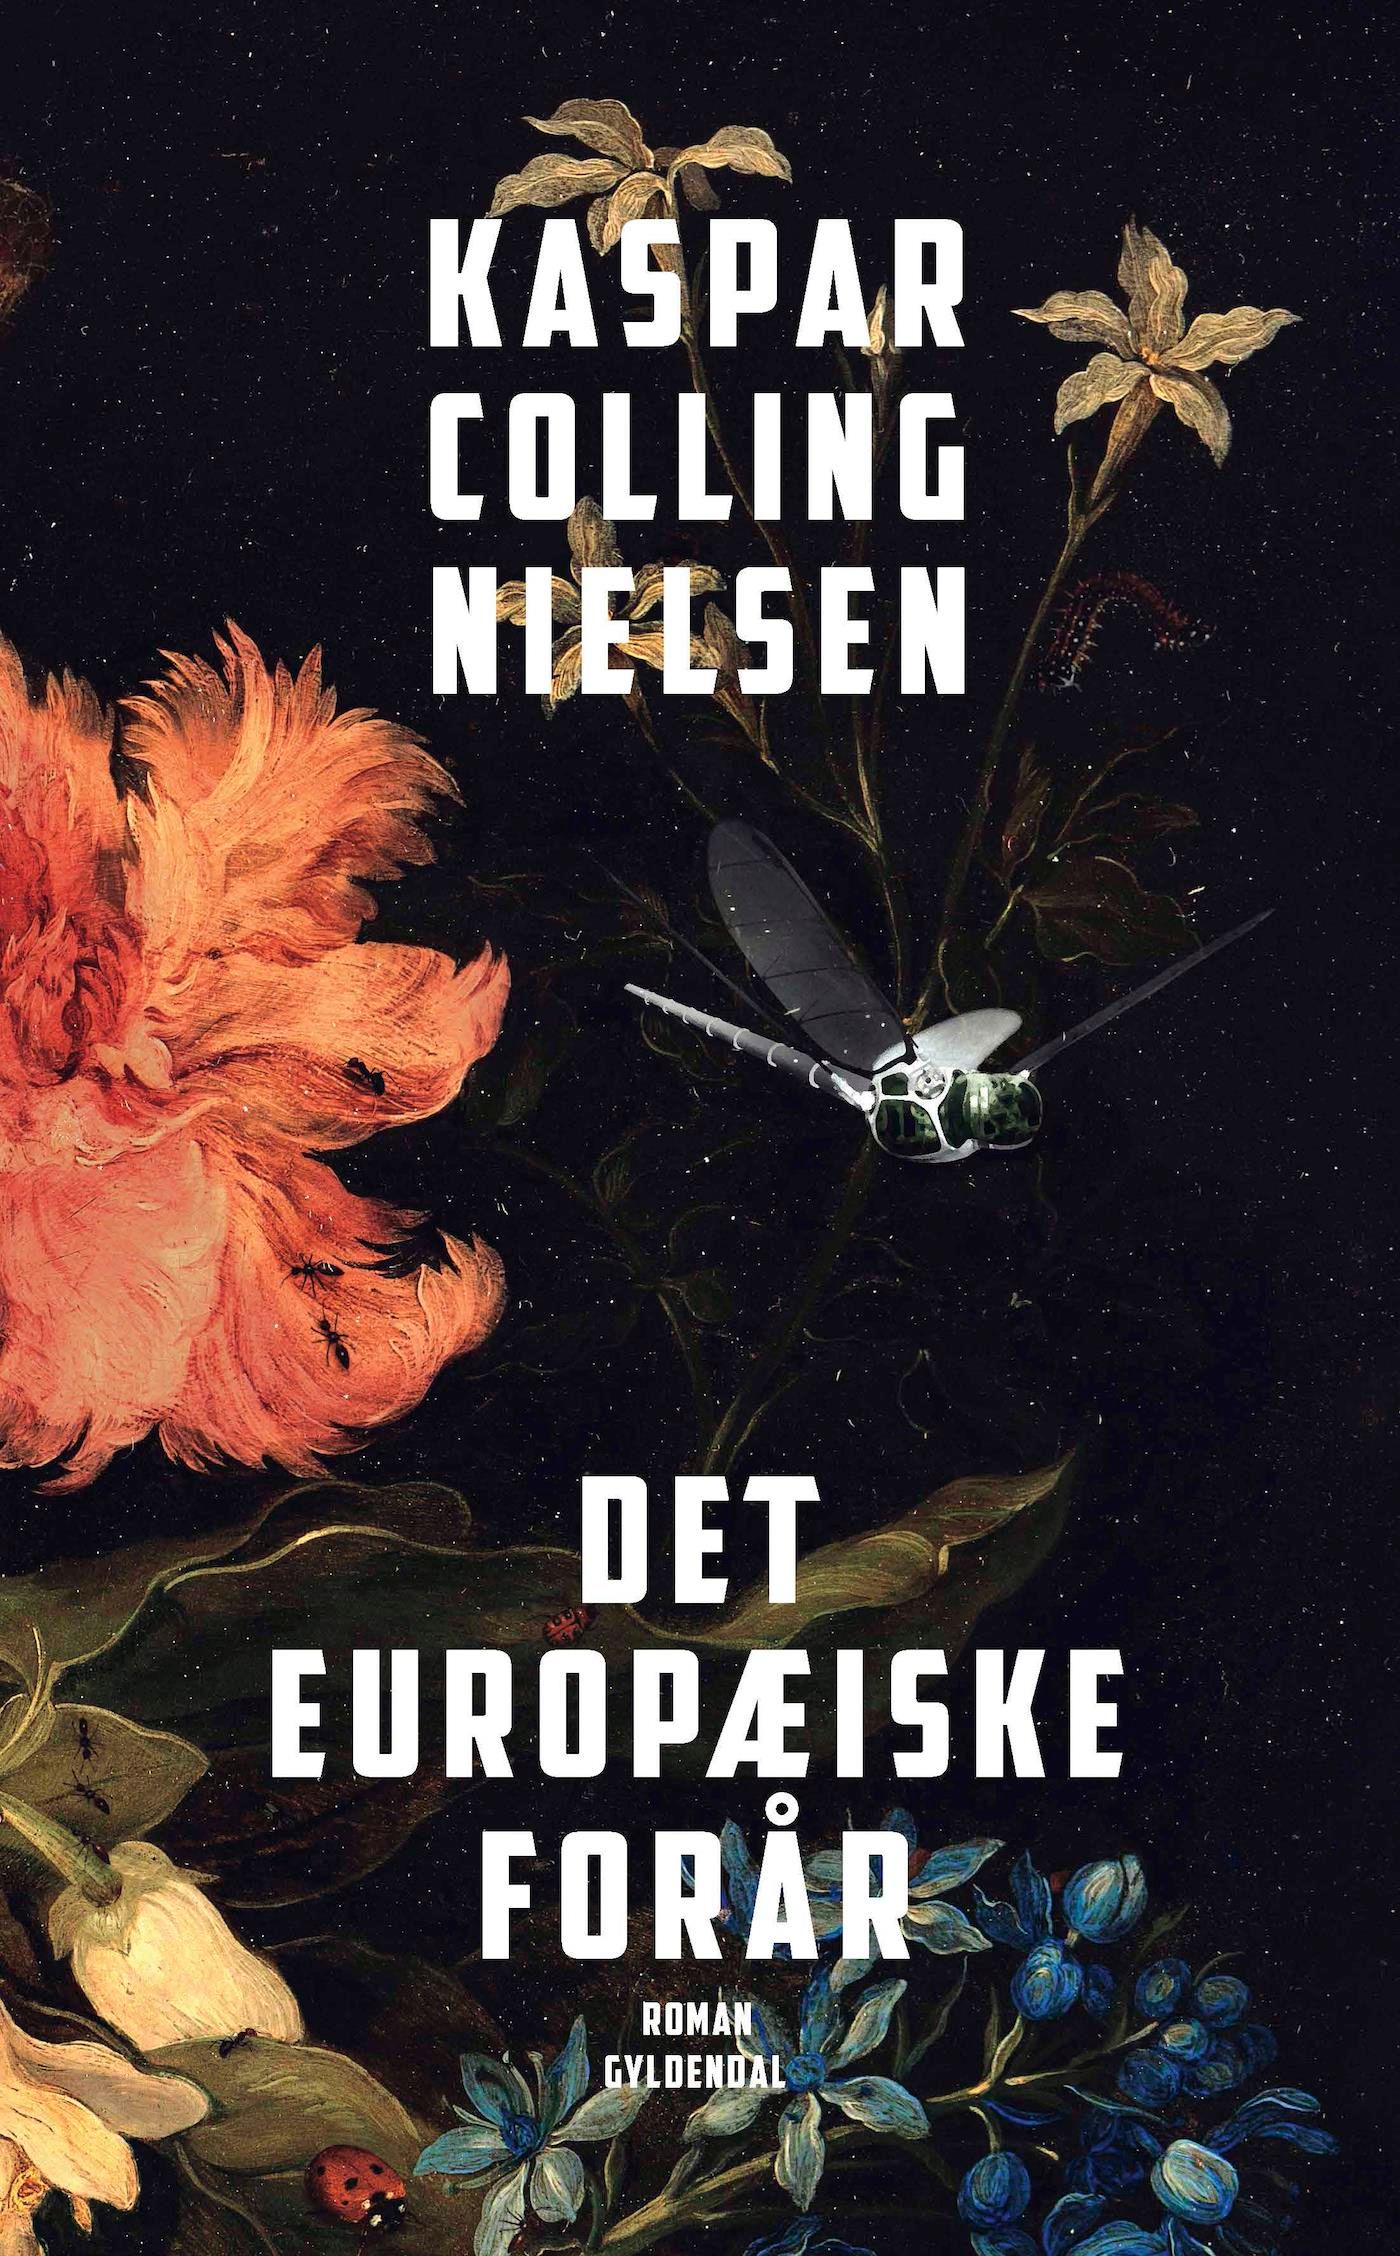 Det europæiske forår, e-bok av Kaspar Colling Nielsen